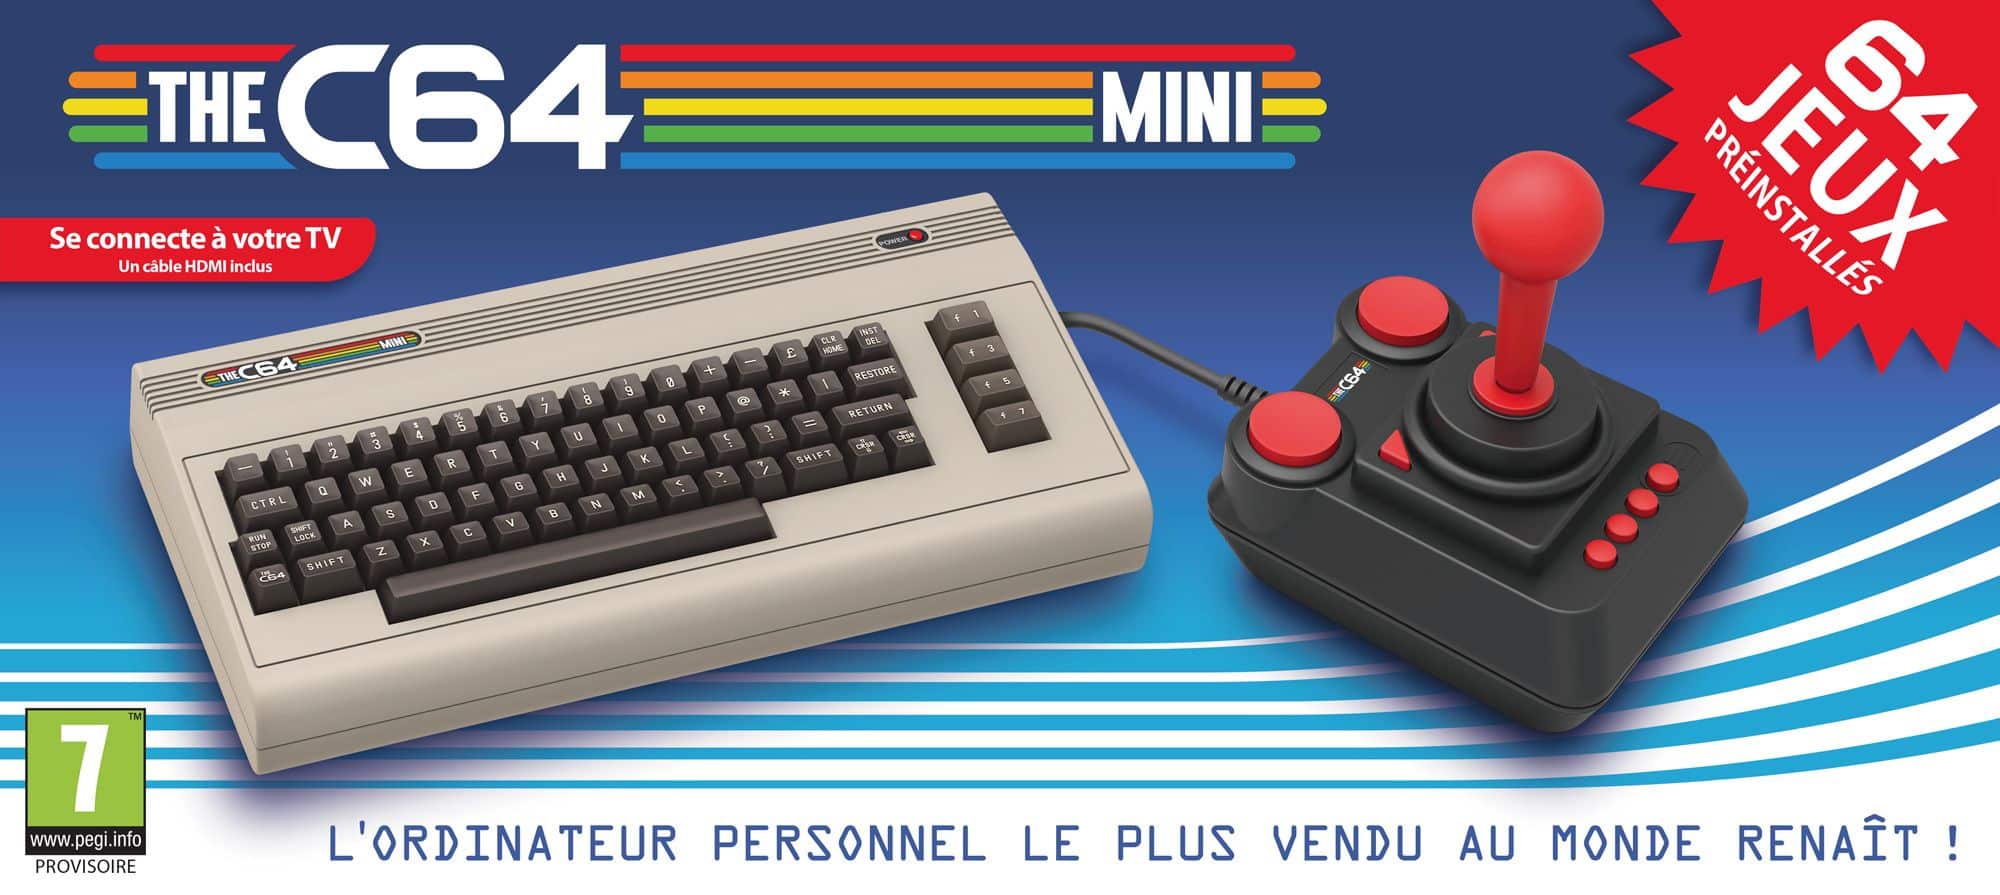 C64 Mini annonce precommande